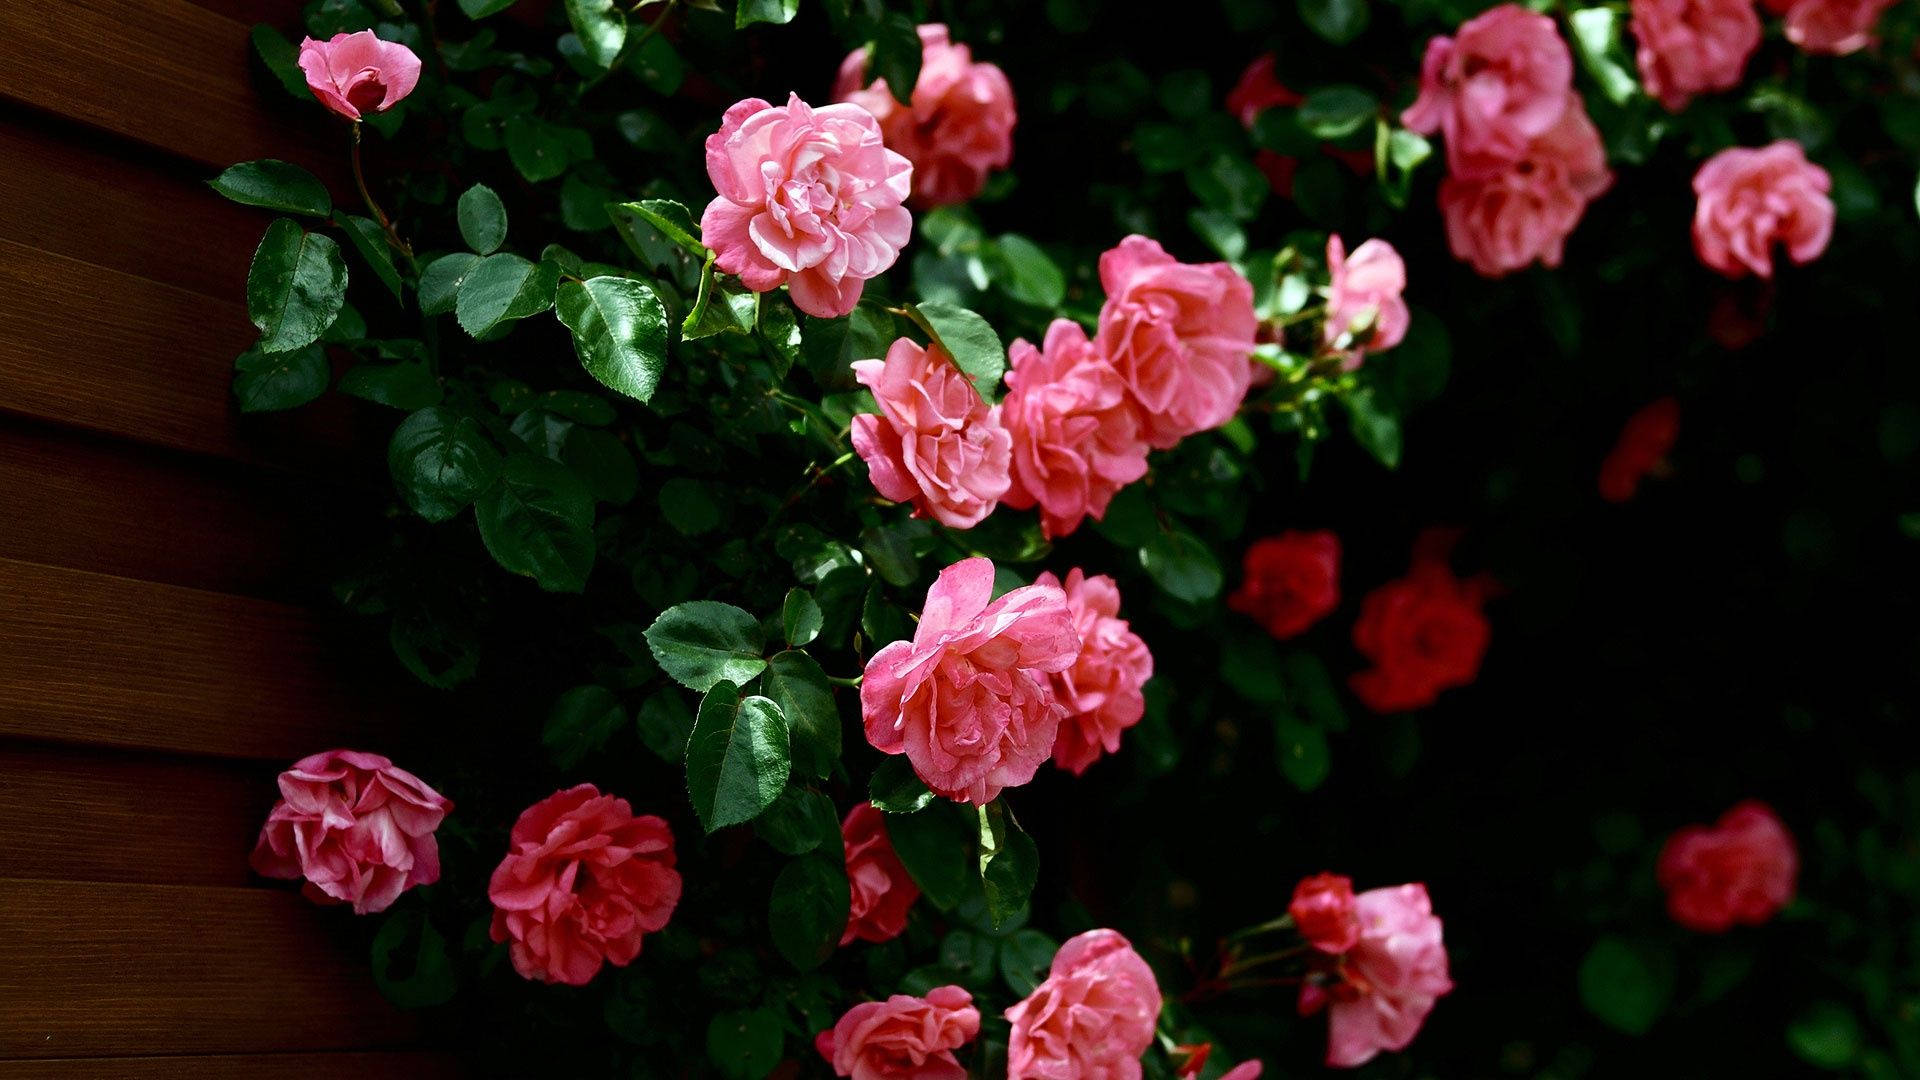 Fondosde Pantalla De Rosas Rosadas Florales Para Escritorio. Fondo de pantalla